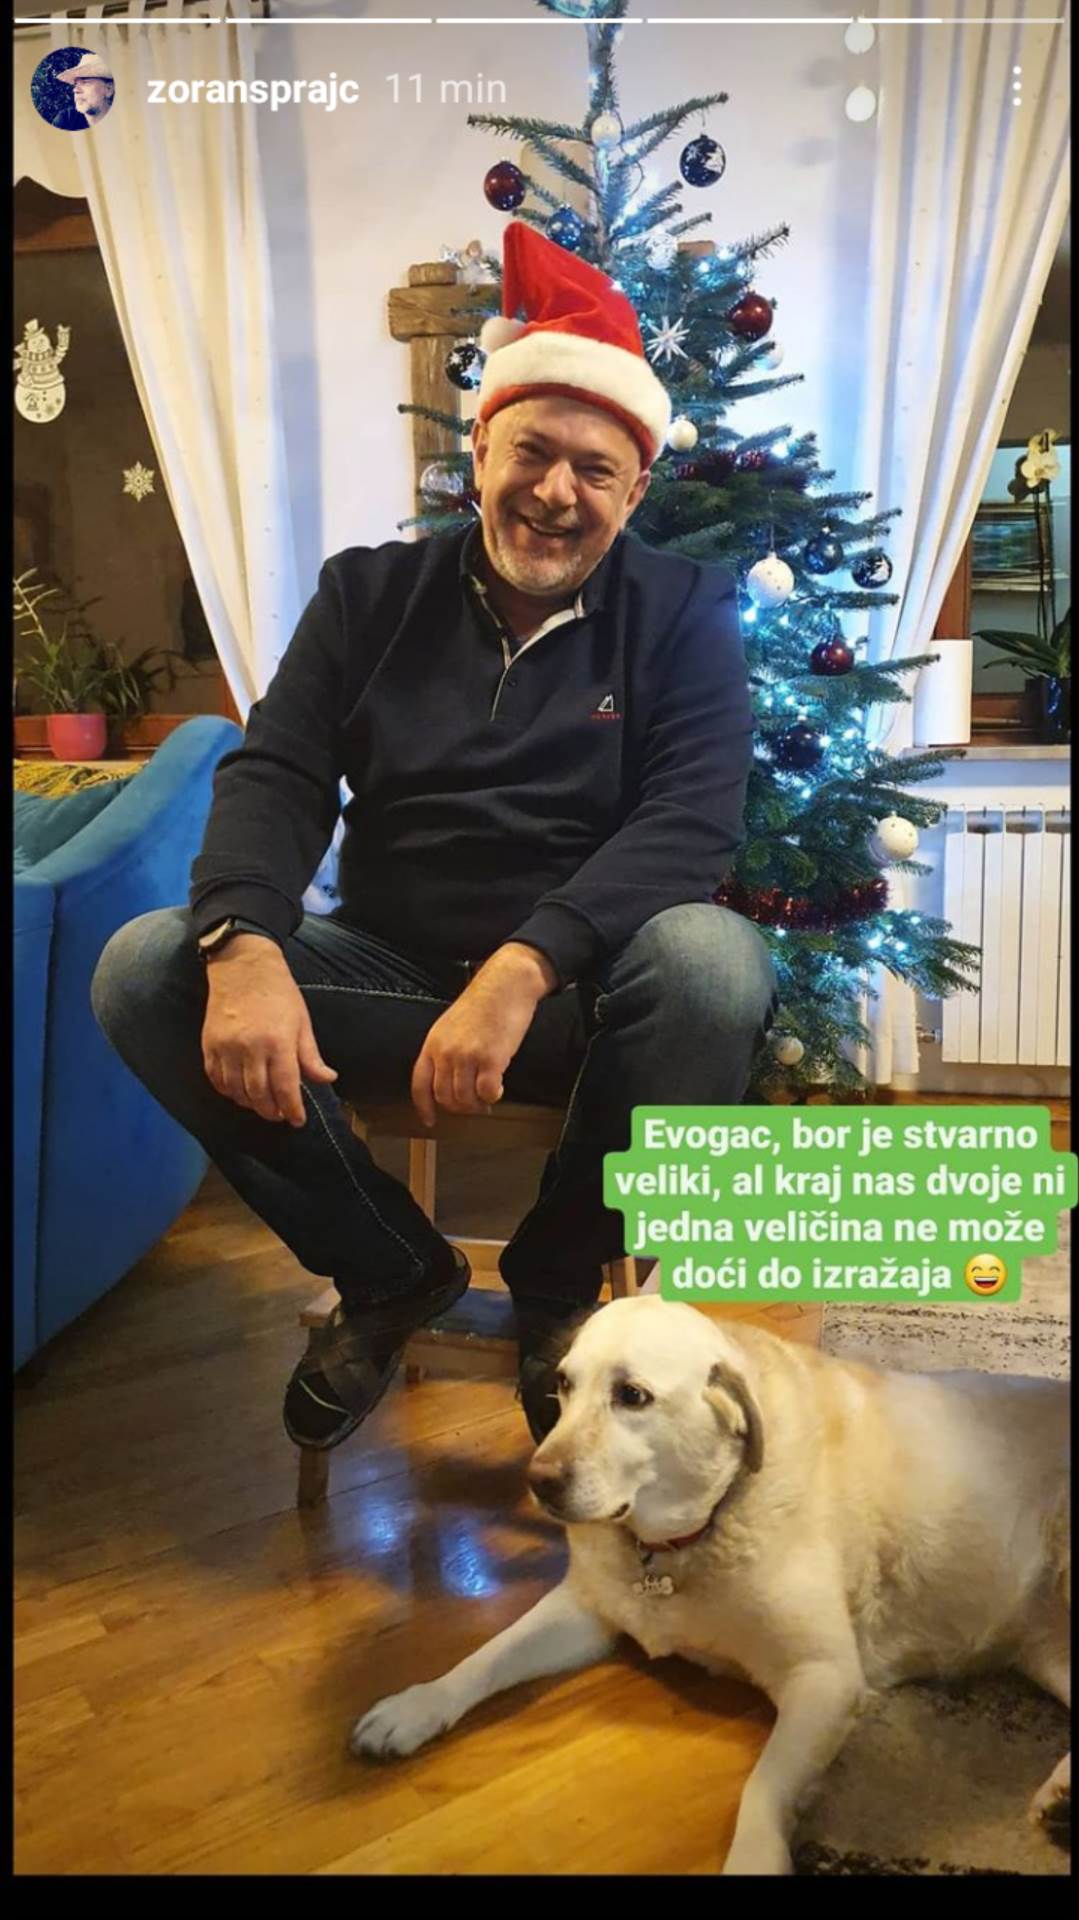 POSAO ZA PAPA ŠTRUMPFA Ovako je Zoran Šprajc okitio božićno drvce